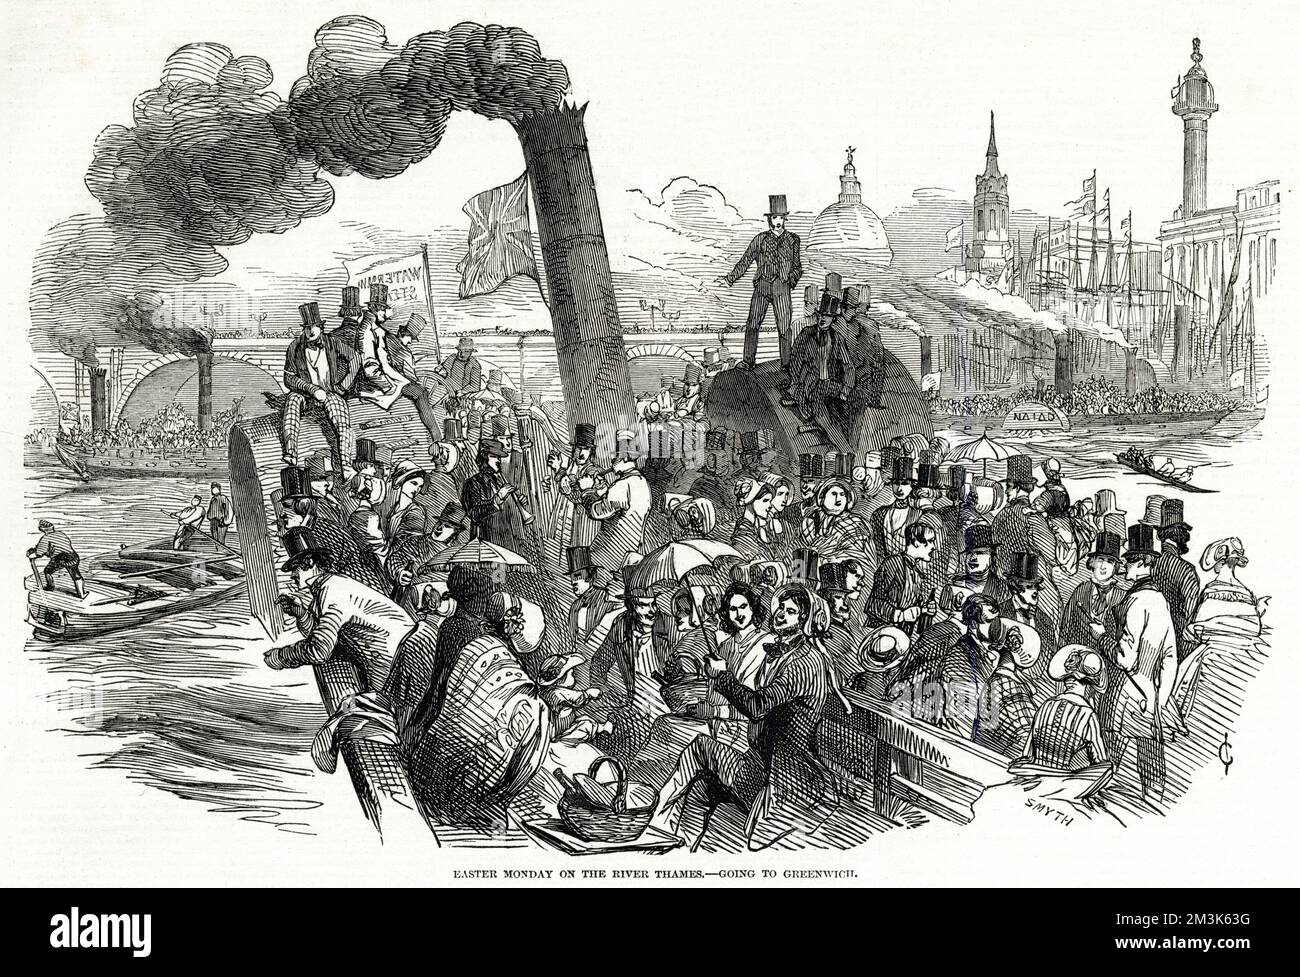 Passagers à bord d'un bateau à aubes, en direction de la Tamise vers Greenwich le lundi de Pâques. Cette vue montre le pont du bateau en direction de Londres, avec le Monument et St. La cathédrale de Pauls se trouve sur la droite. Date: 1847 Banque D'Images